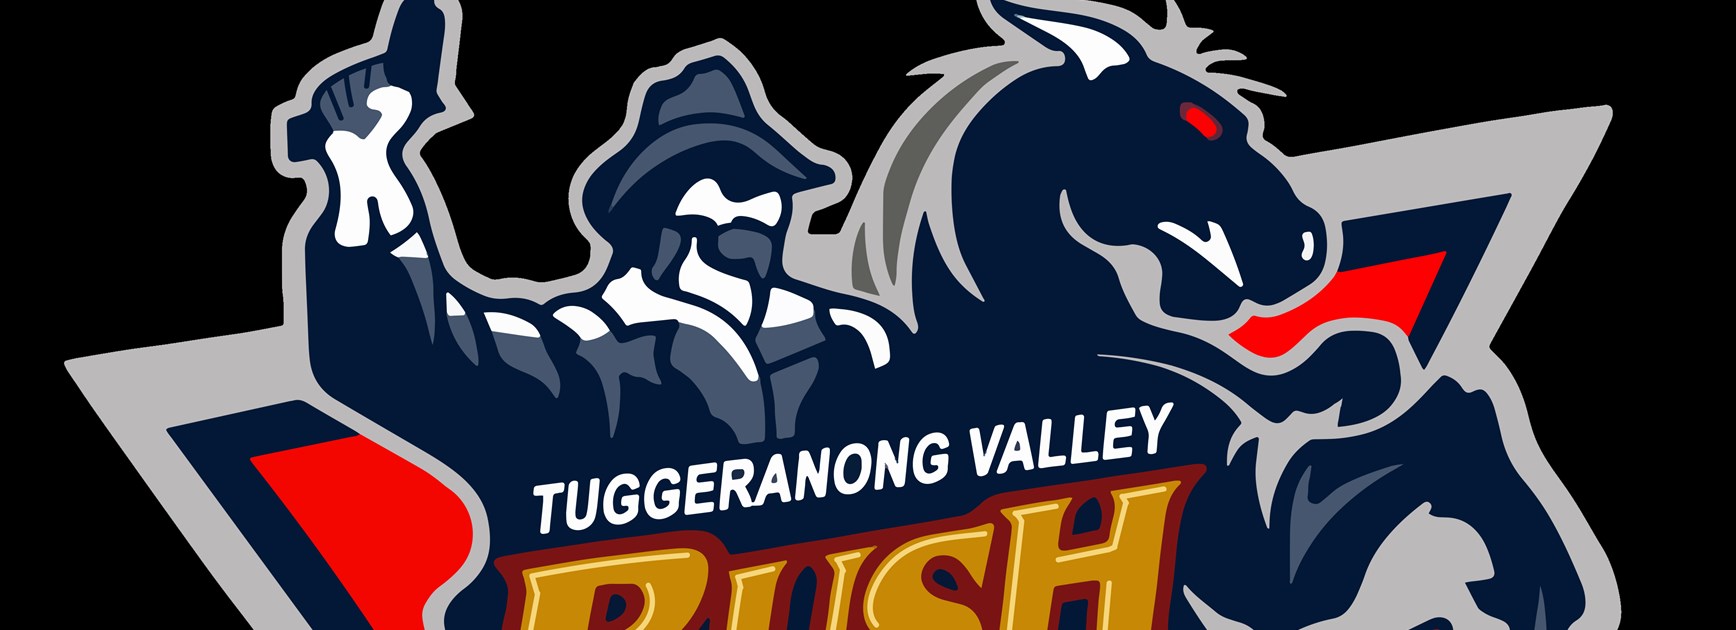 Players wanted for 2022 season: Tuggeranong Bushrangers